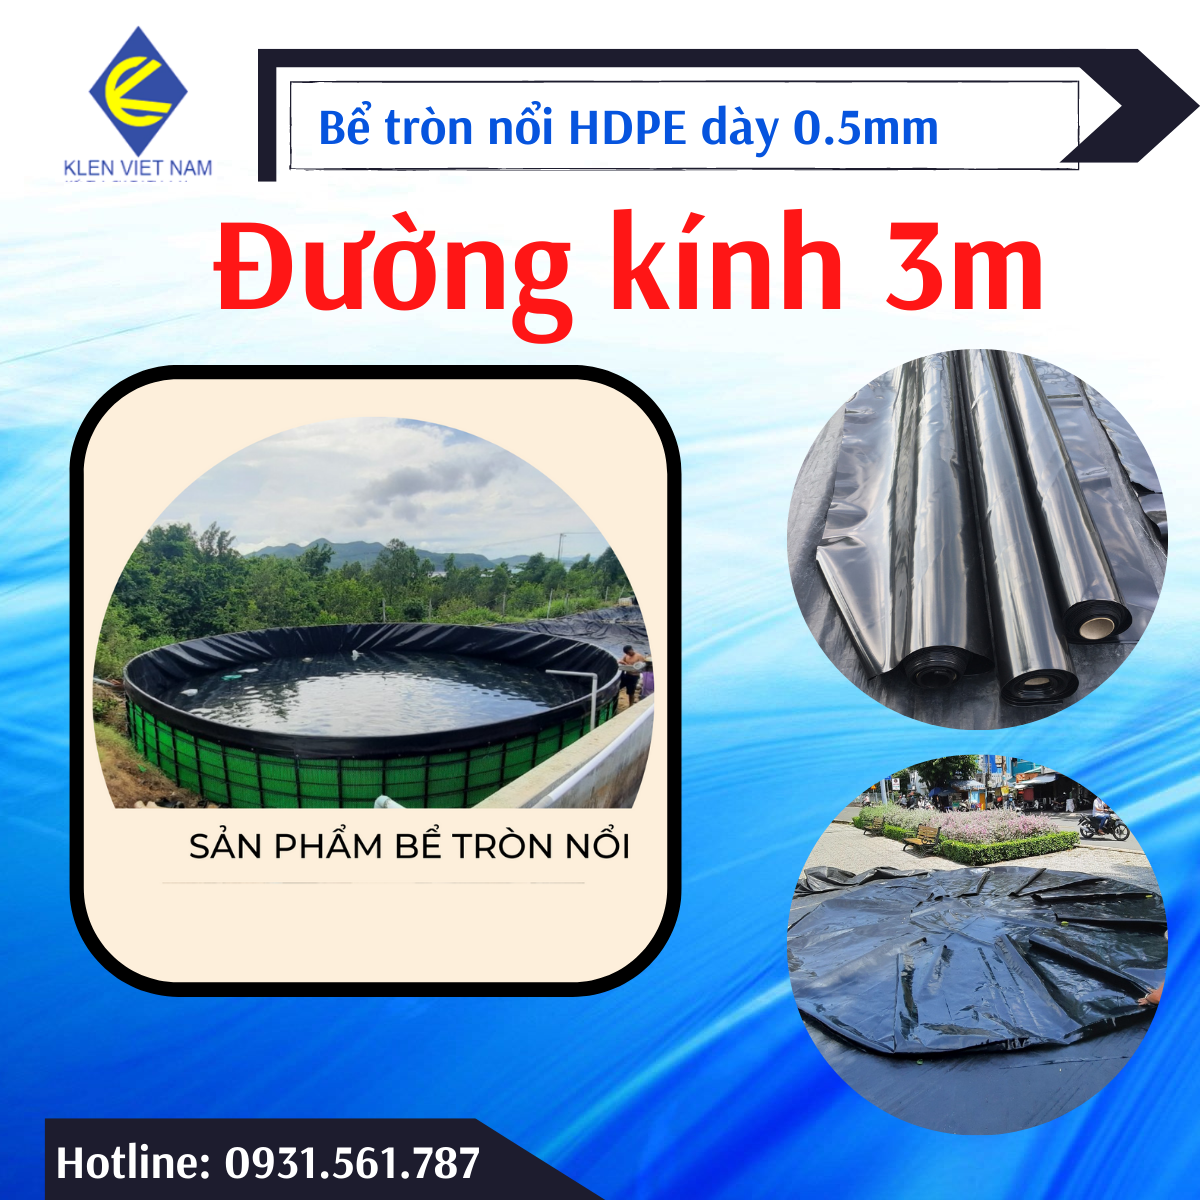 HCM Bể bạt nuôi cá chất liệu HDPE dày 5zem đường kính 3m cao 1.5m